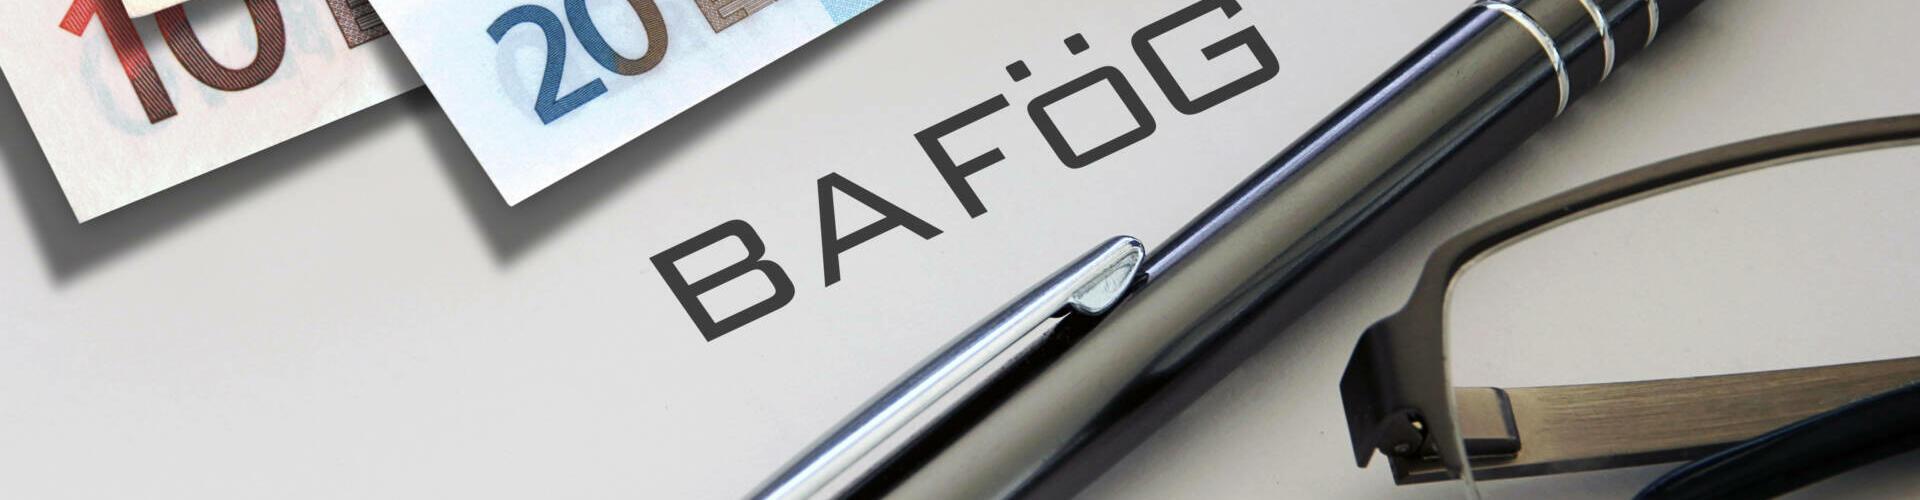 BAföG: Alles zur Studienfinanzierung und dem BAföG-Antrag